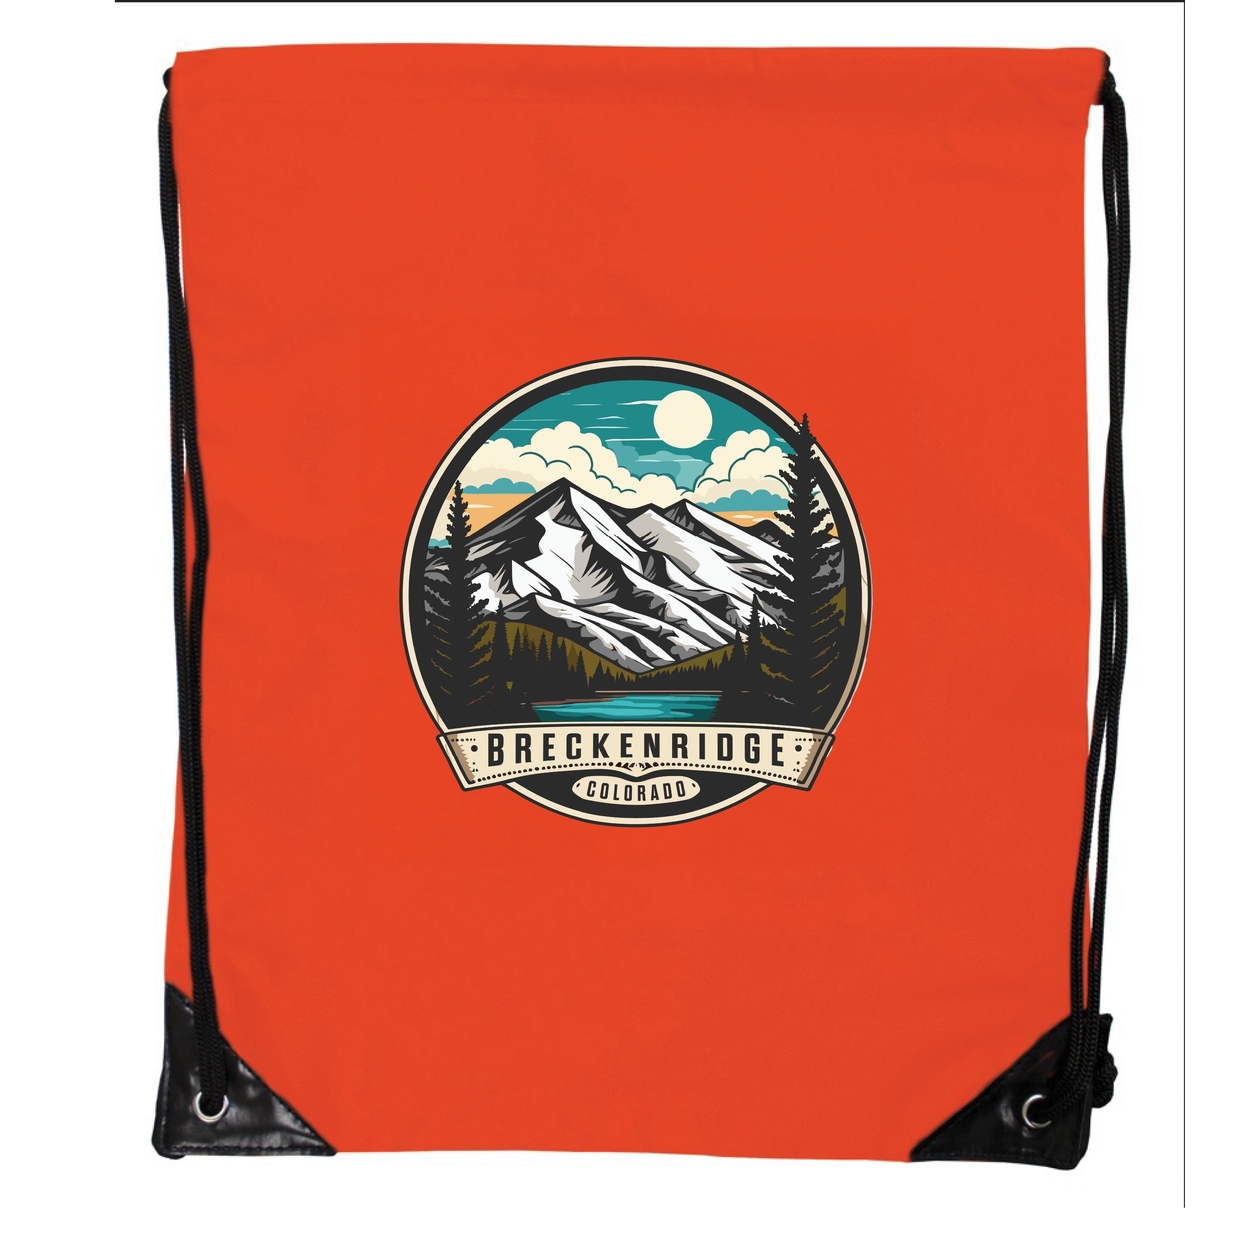 Breckenridge Colorado Design A Souvenir Cinch Bag With Drawstring Backpack Black - Orange